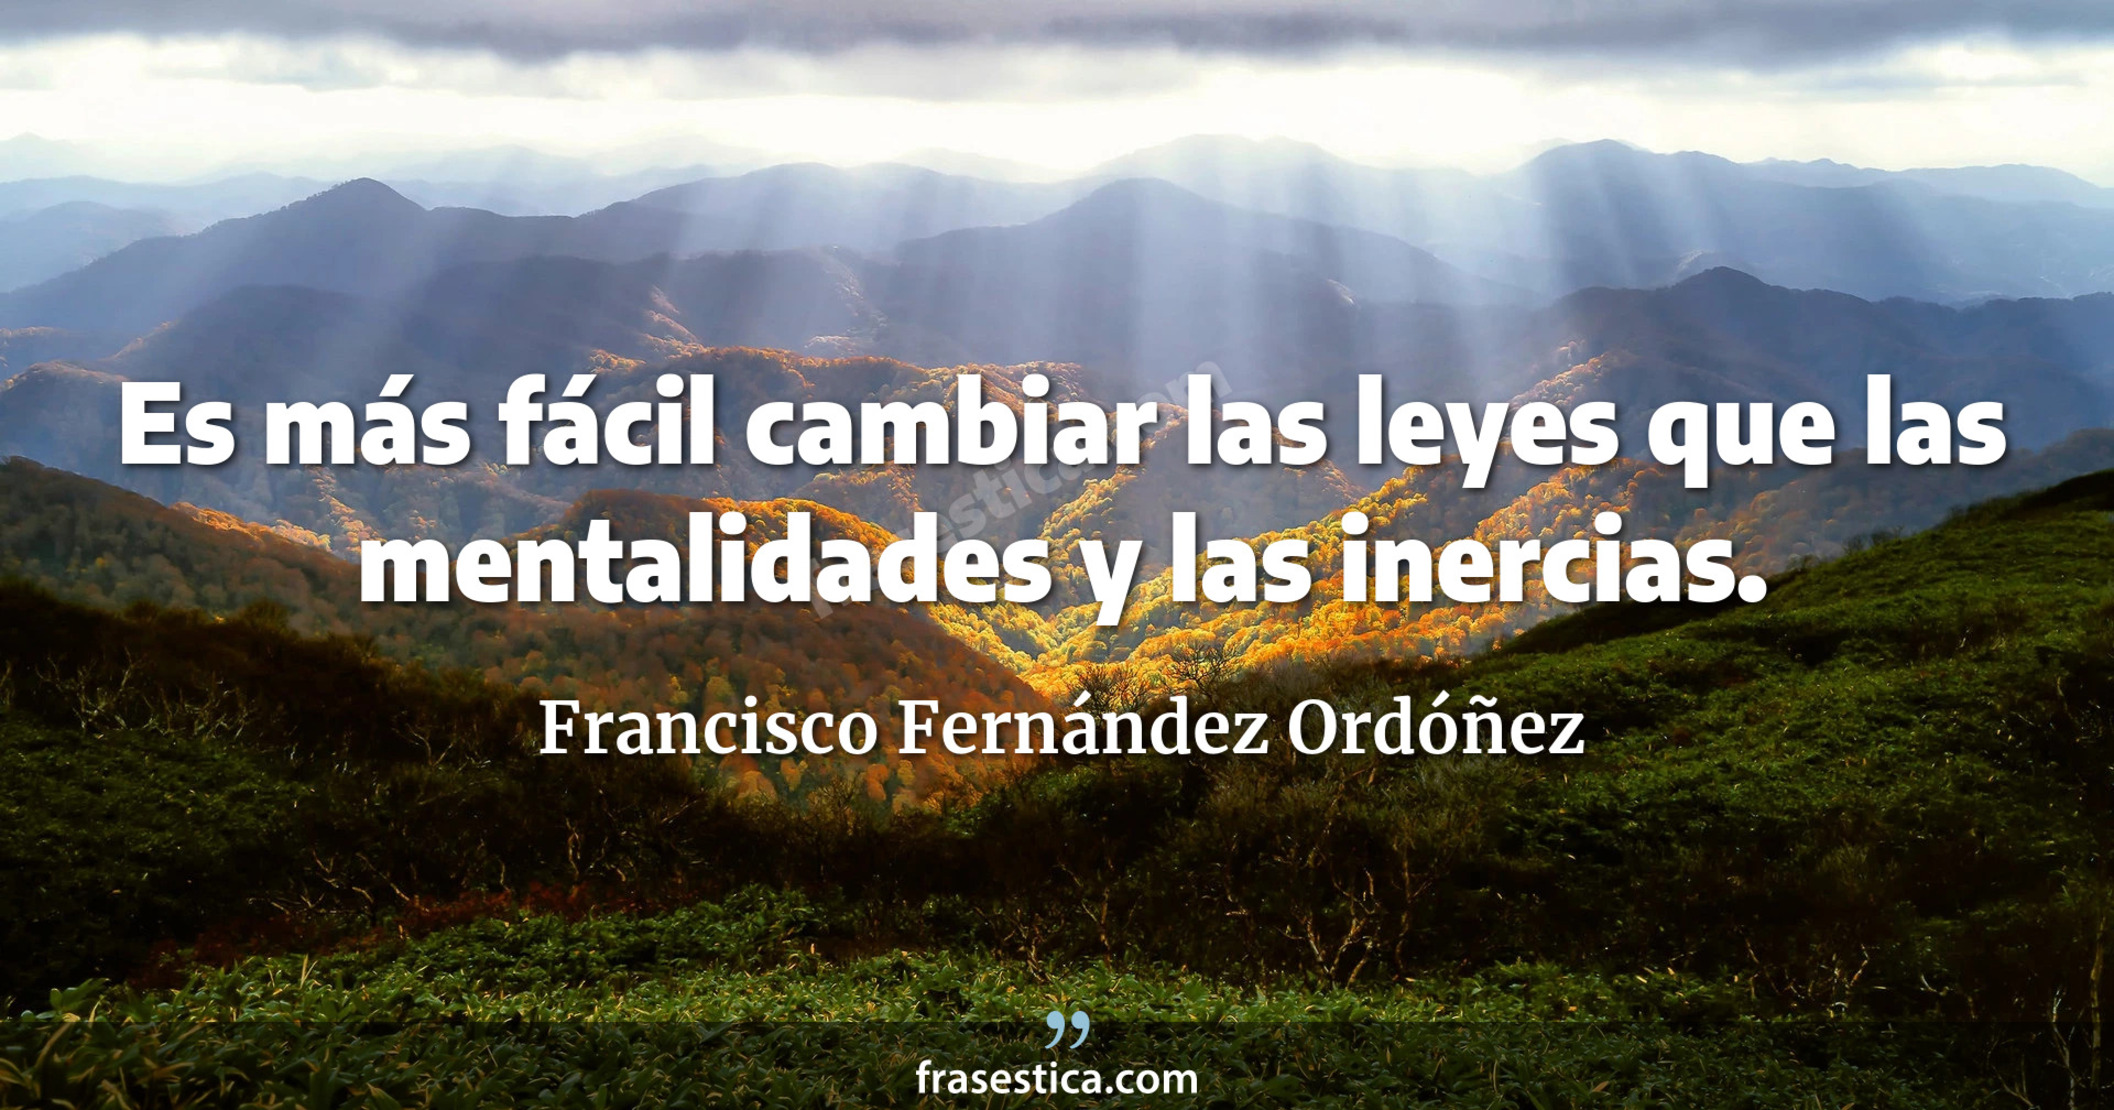 Es más fácil cambiar las leyes que las mentalidades y las inercias. - Francisco Fernández Ordóñez